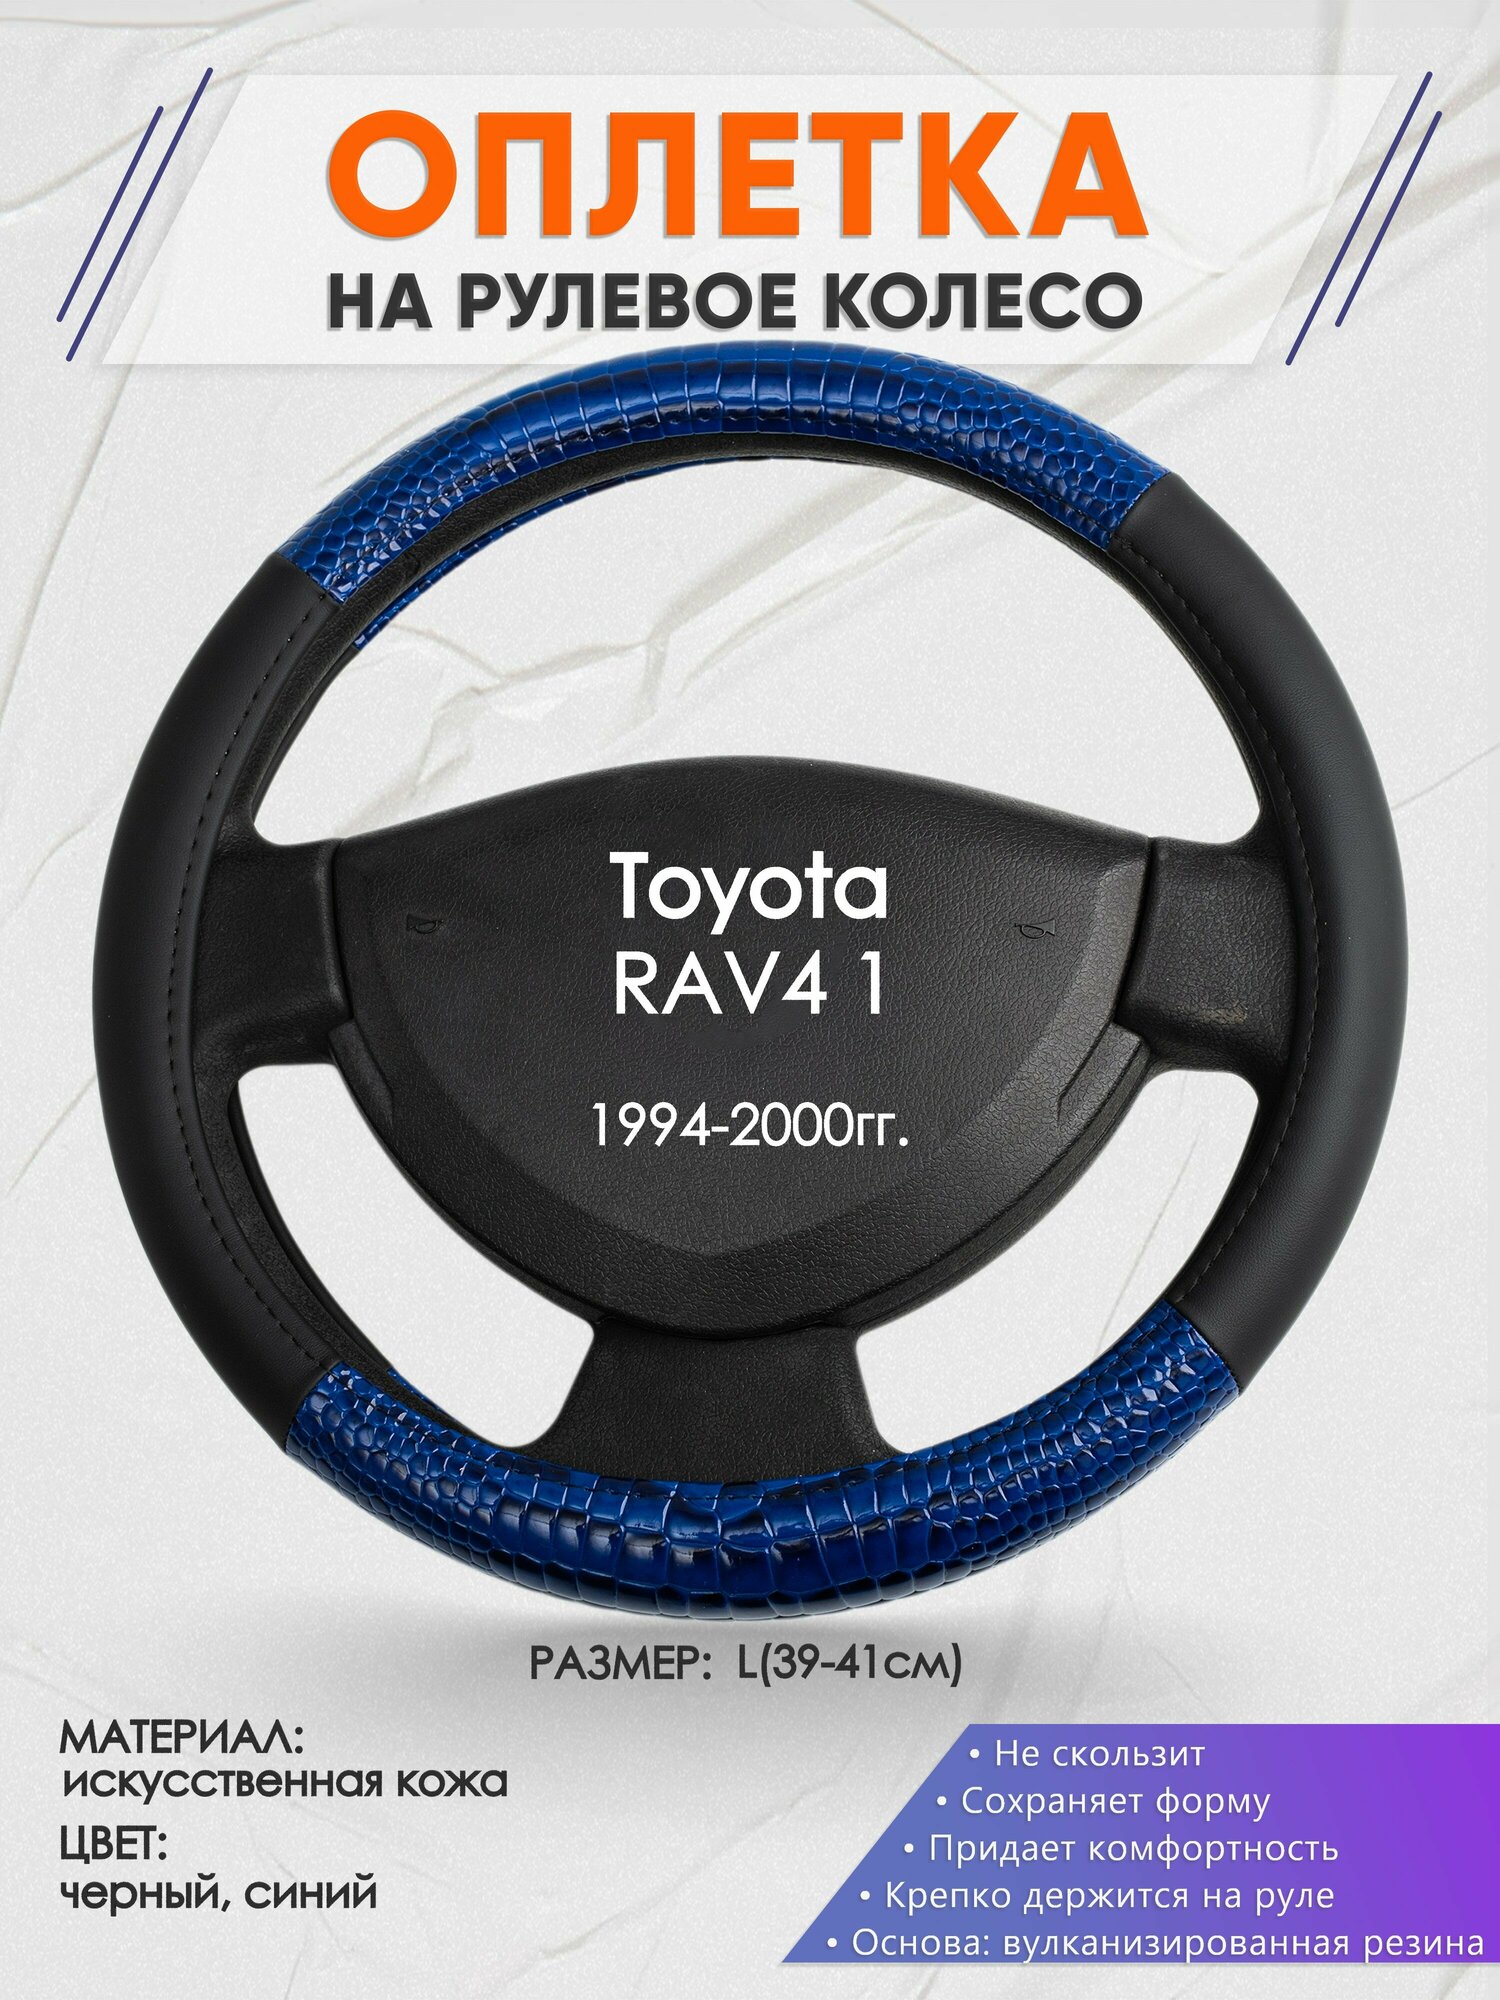 Оплетка на руль для Toyota RAV4 1(Тойота Рав 4) 1994-2000, L(39-41см), Искусственная кожа 82